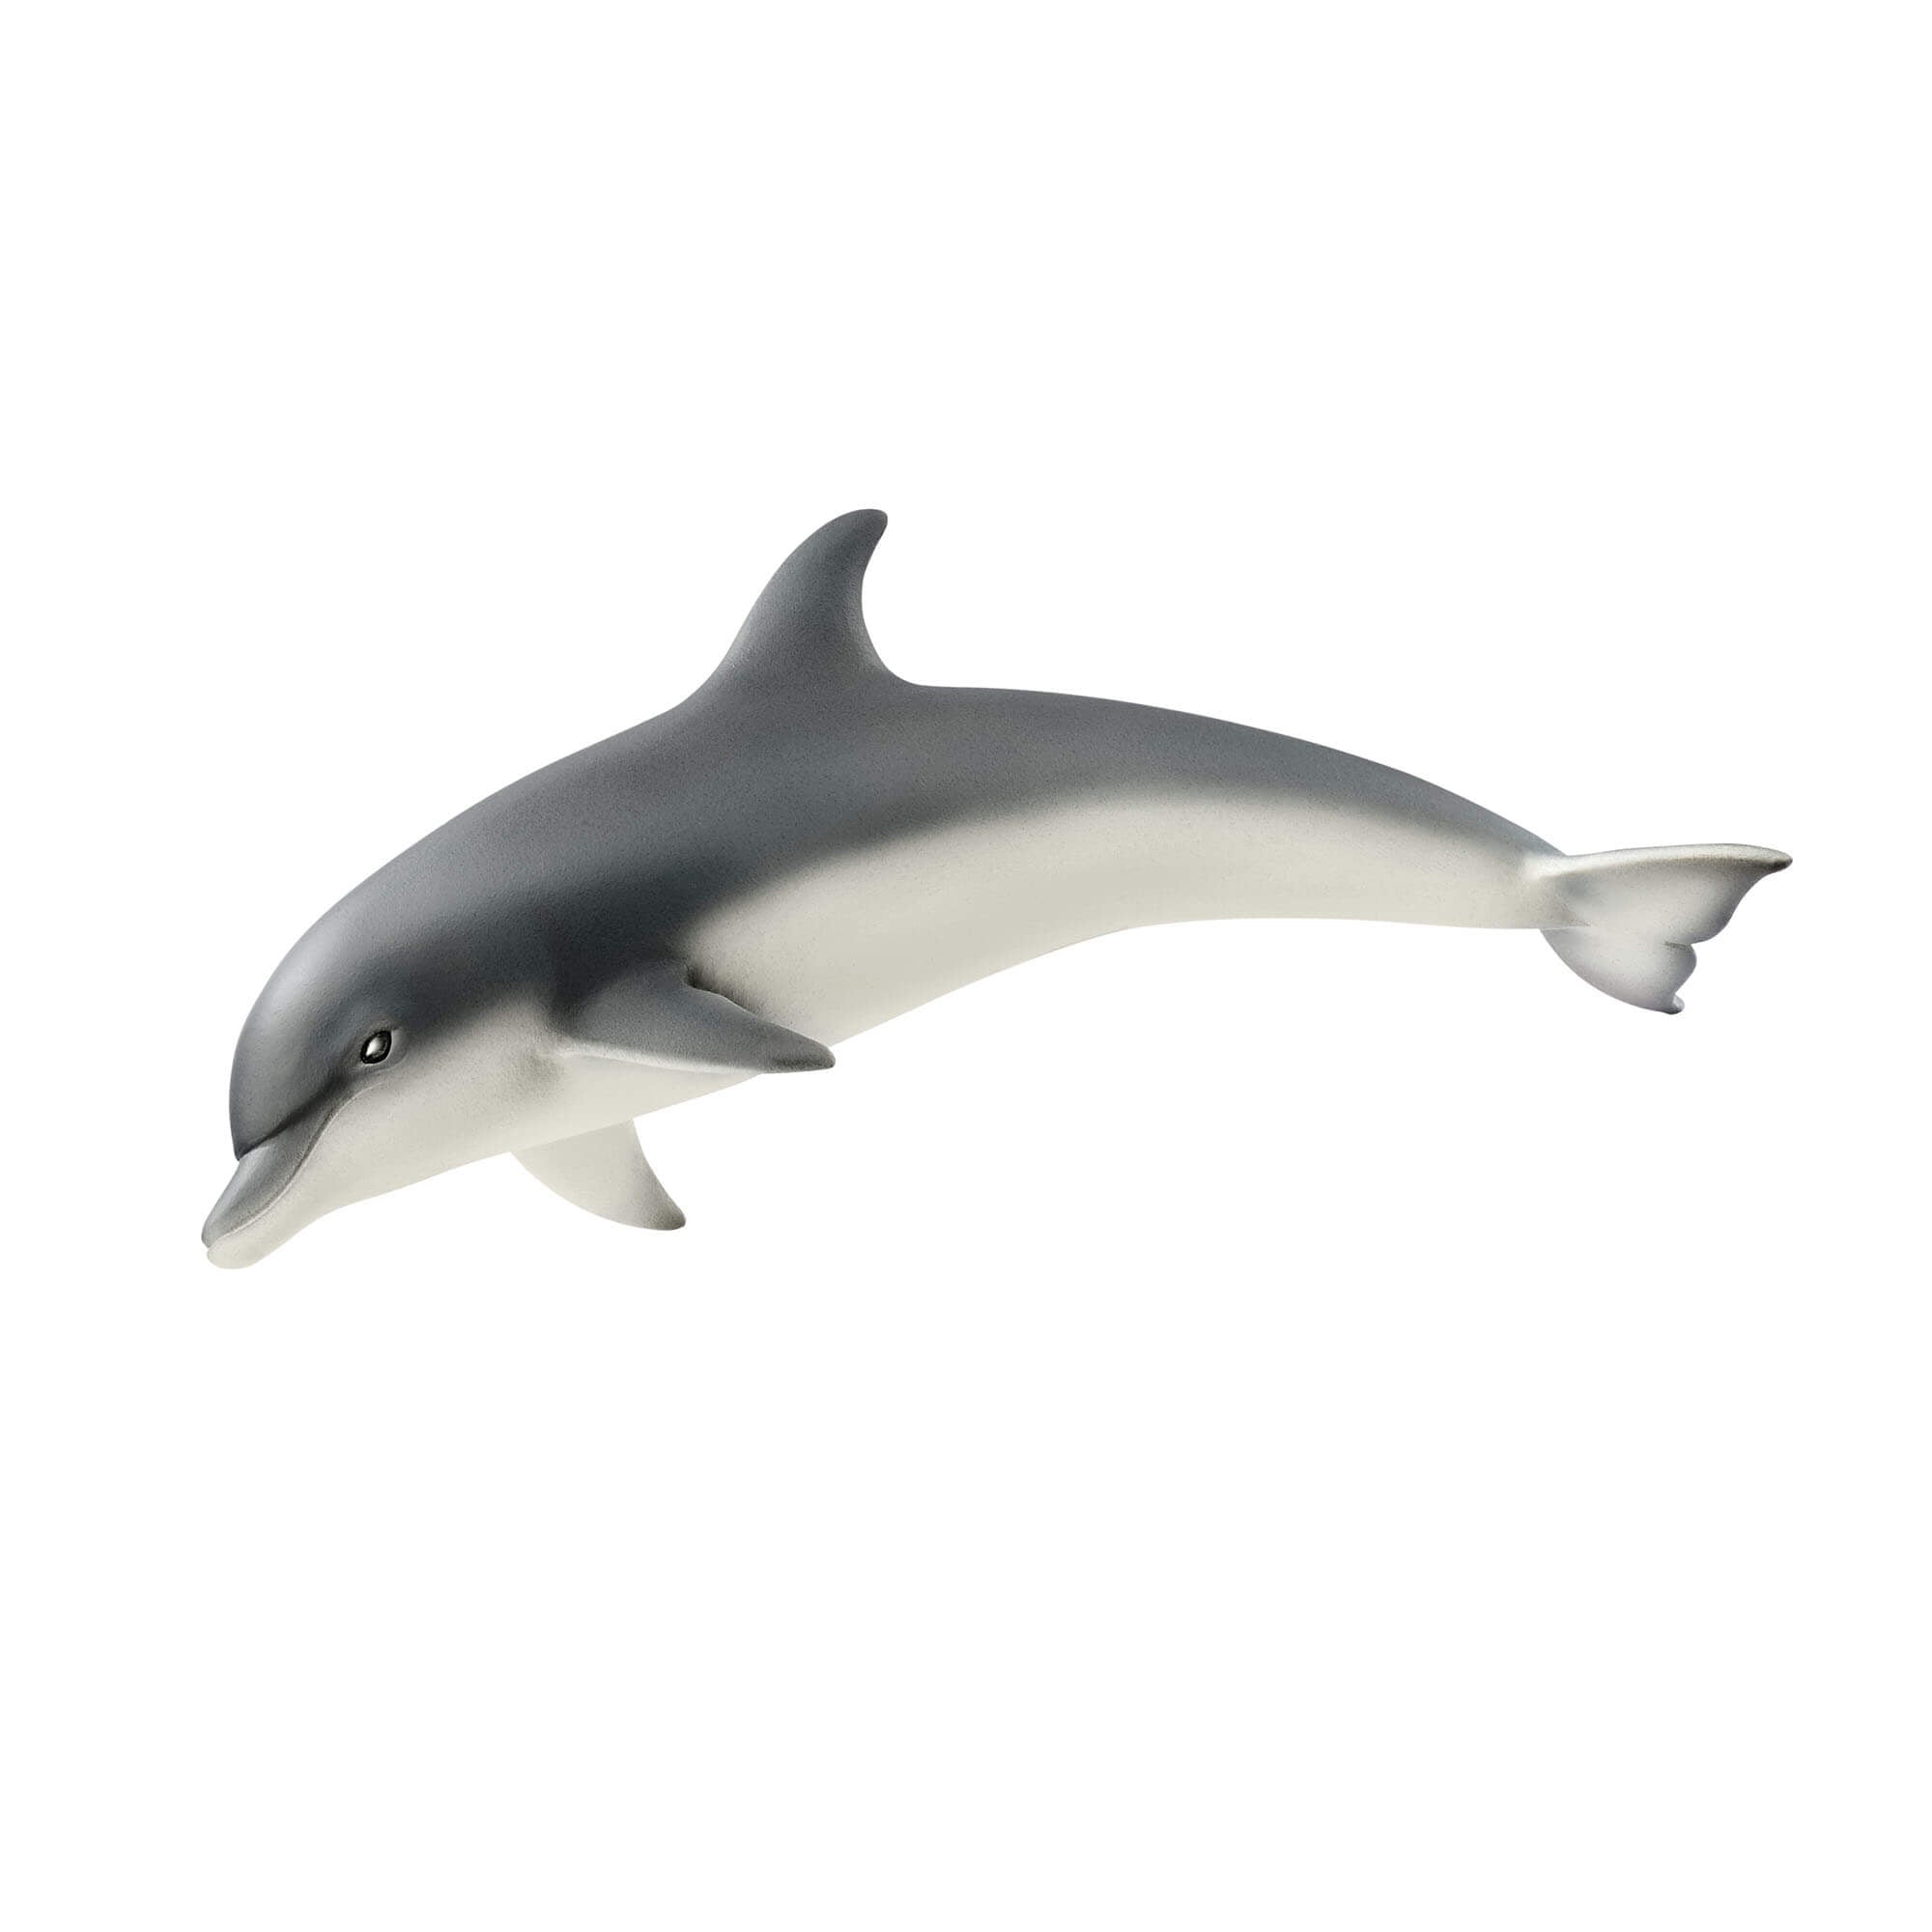 Schleich Wild Life Dolphin Animal Figure